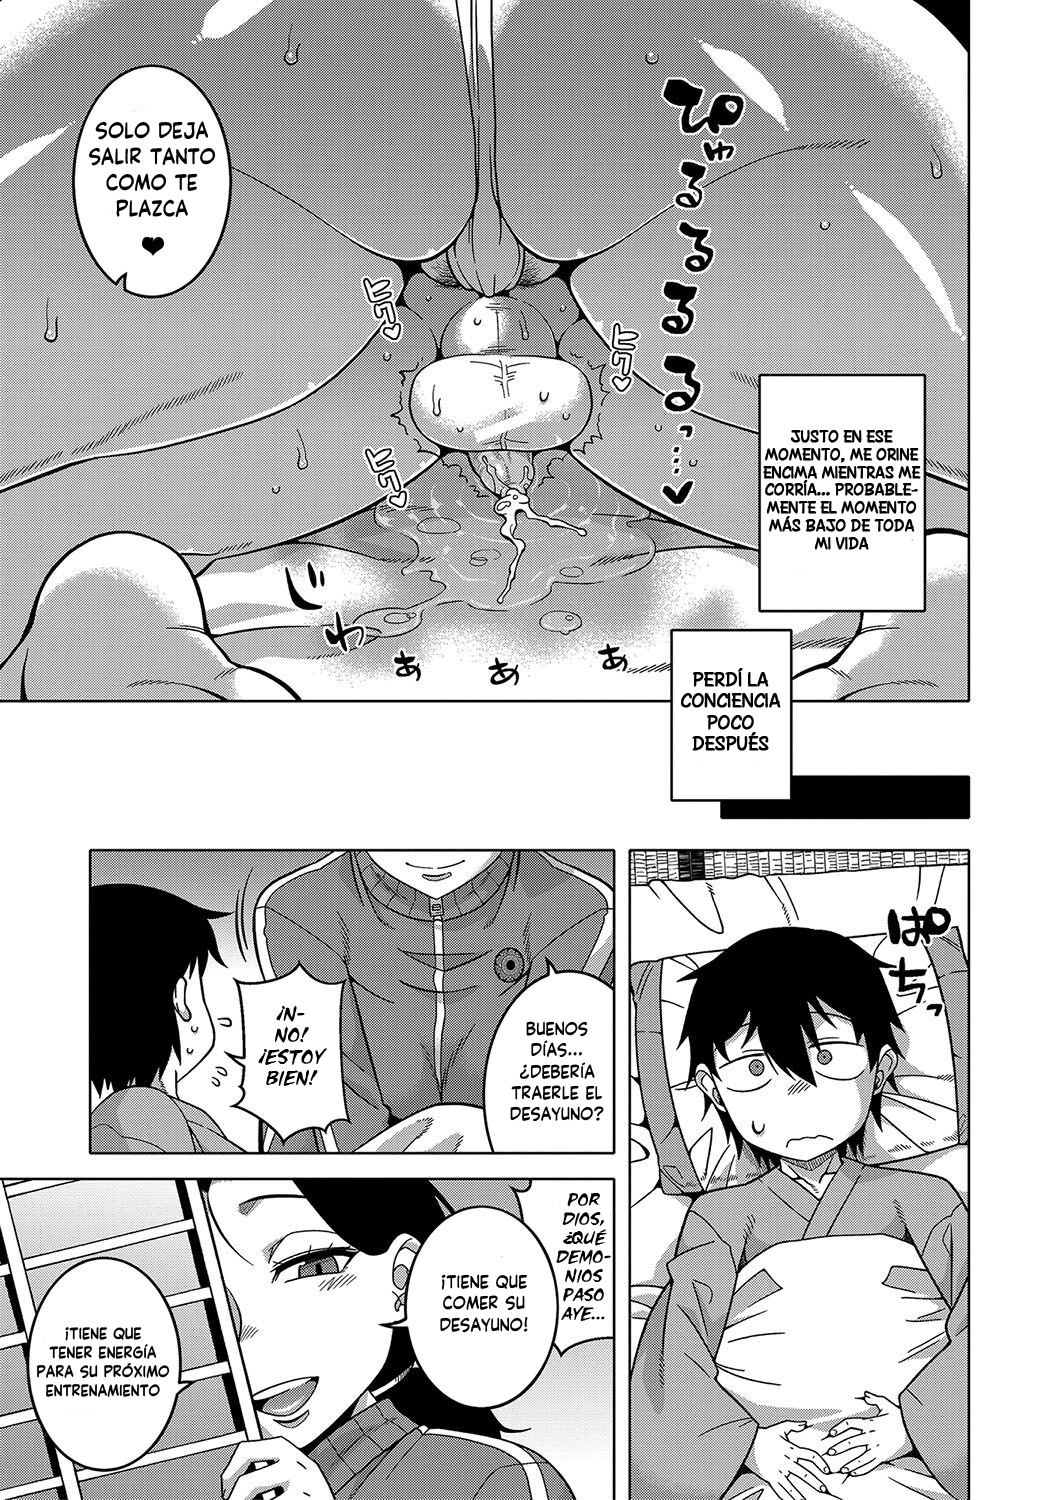 Manga KAMI-SAMA NO TSUKURIKATA-THE MAKING OF A CULT LEADER Chapter 1 image number 27